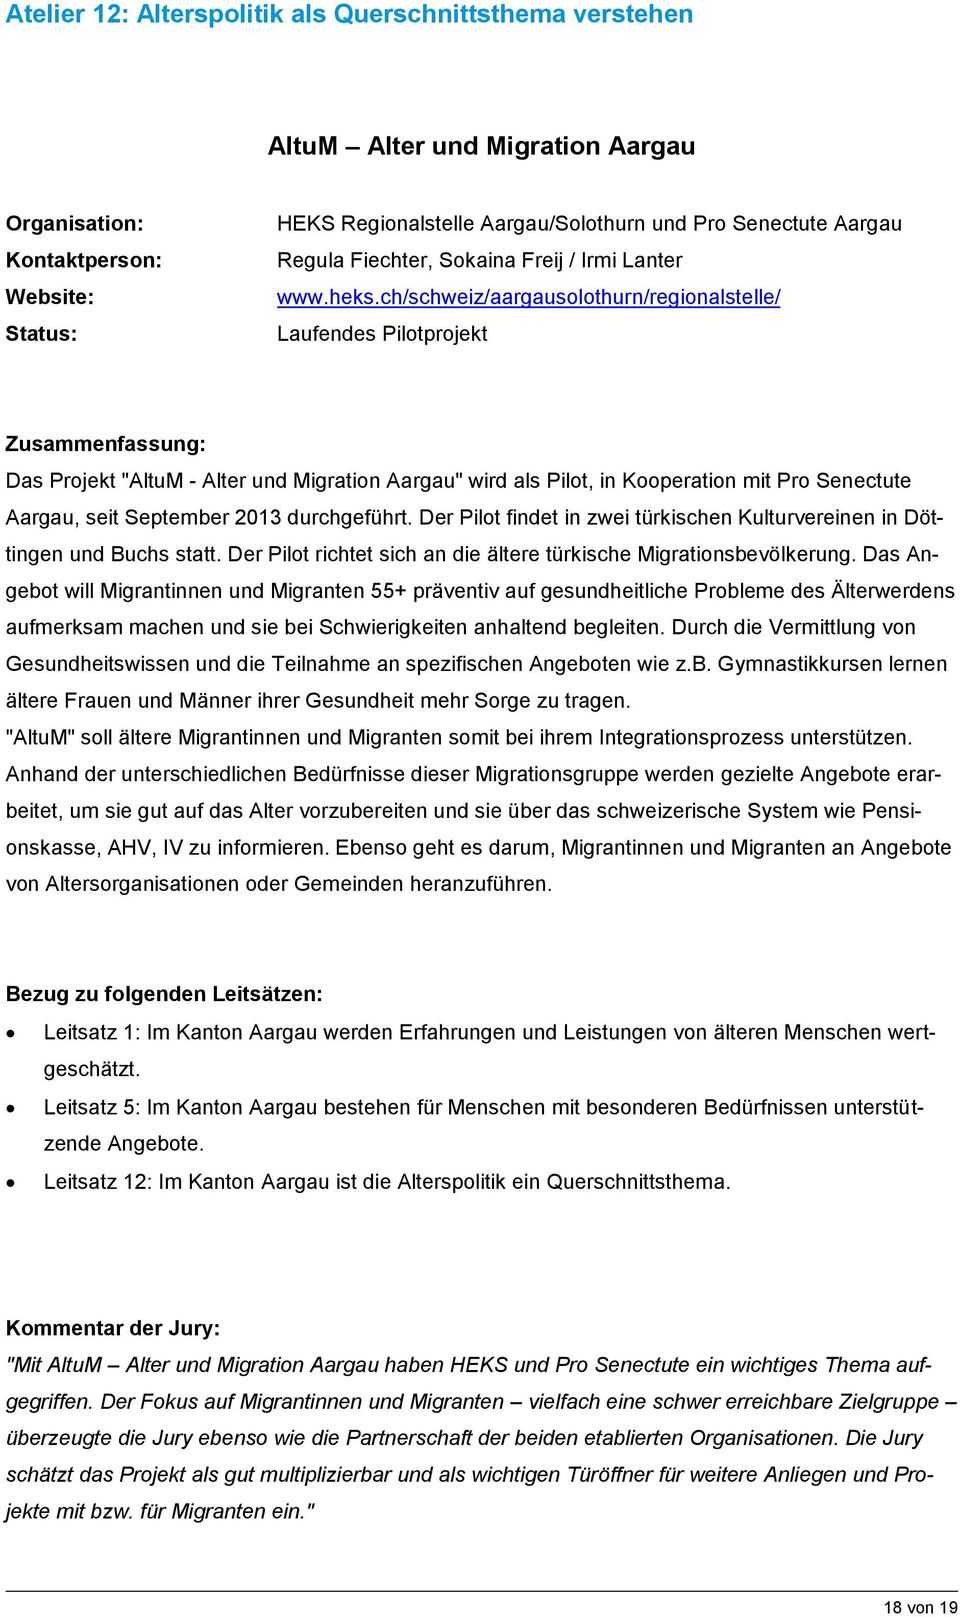 ch/schweiz/aargausolothurn/regionalstelle/ Laufendes Pilotprojekt Das Projekt "AltuM - Alter und Migration Aargau" wird als Pilot, in Kooperation mit Pro Senectute Aargau, seit September 2013